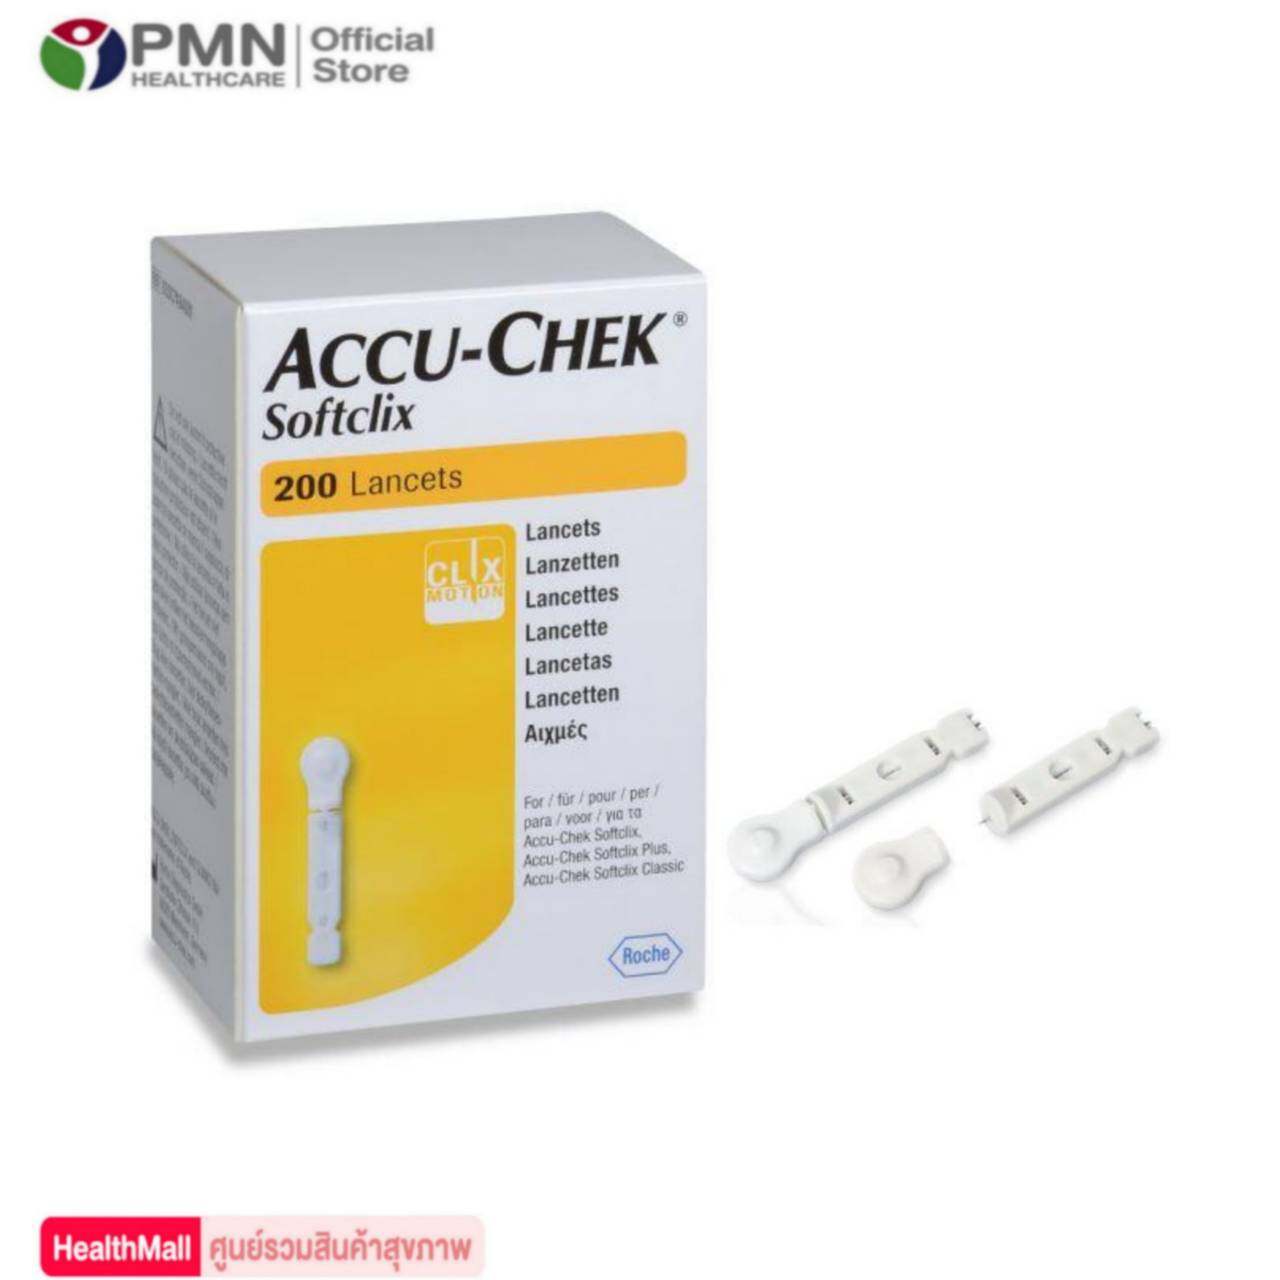 Accu chek Softclix Lancets เข็มเจาะเลือด ตรวจน้ำตาล (200 ชิ้น) Accu-chek